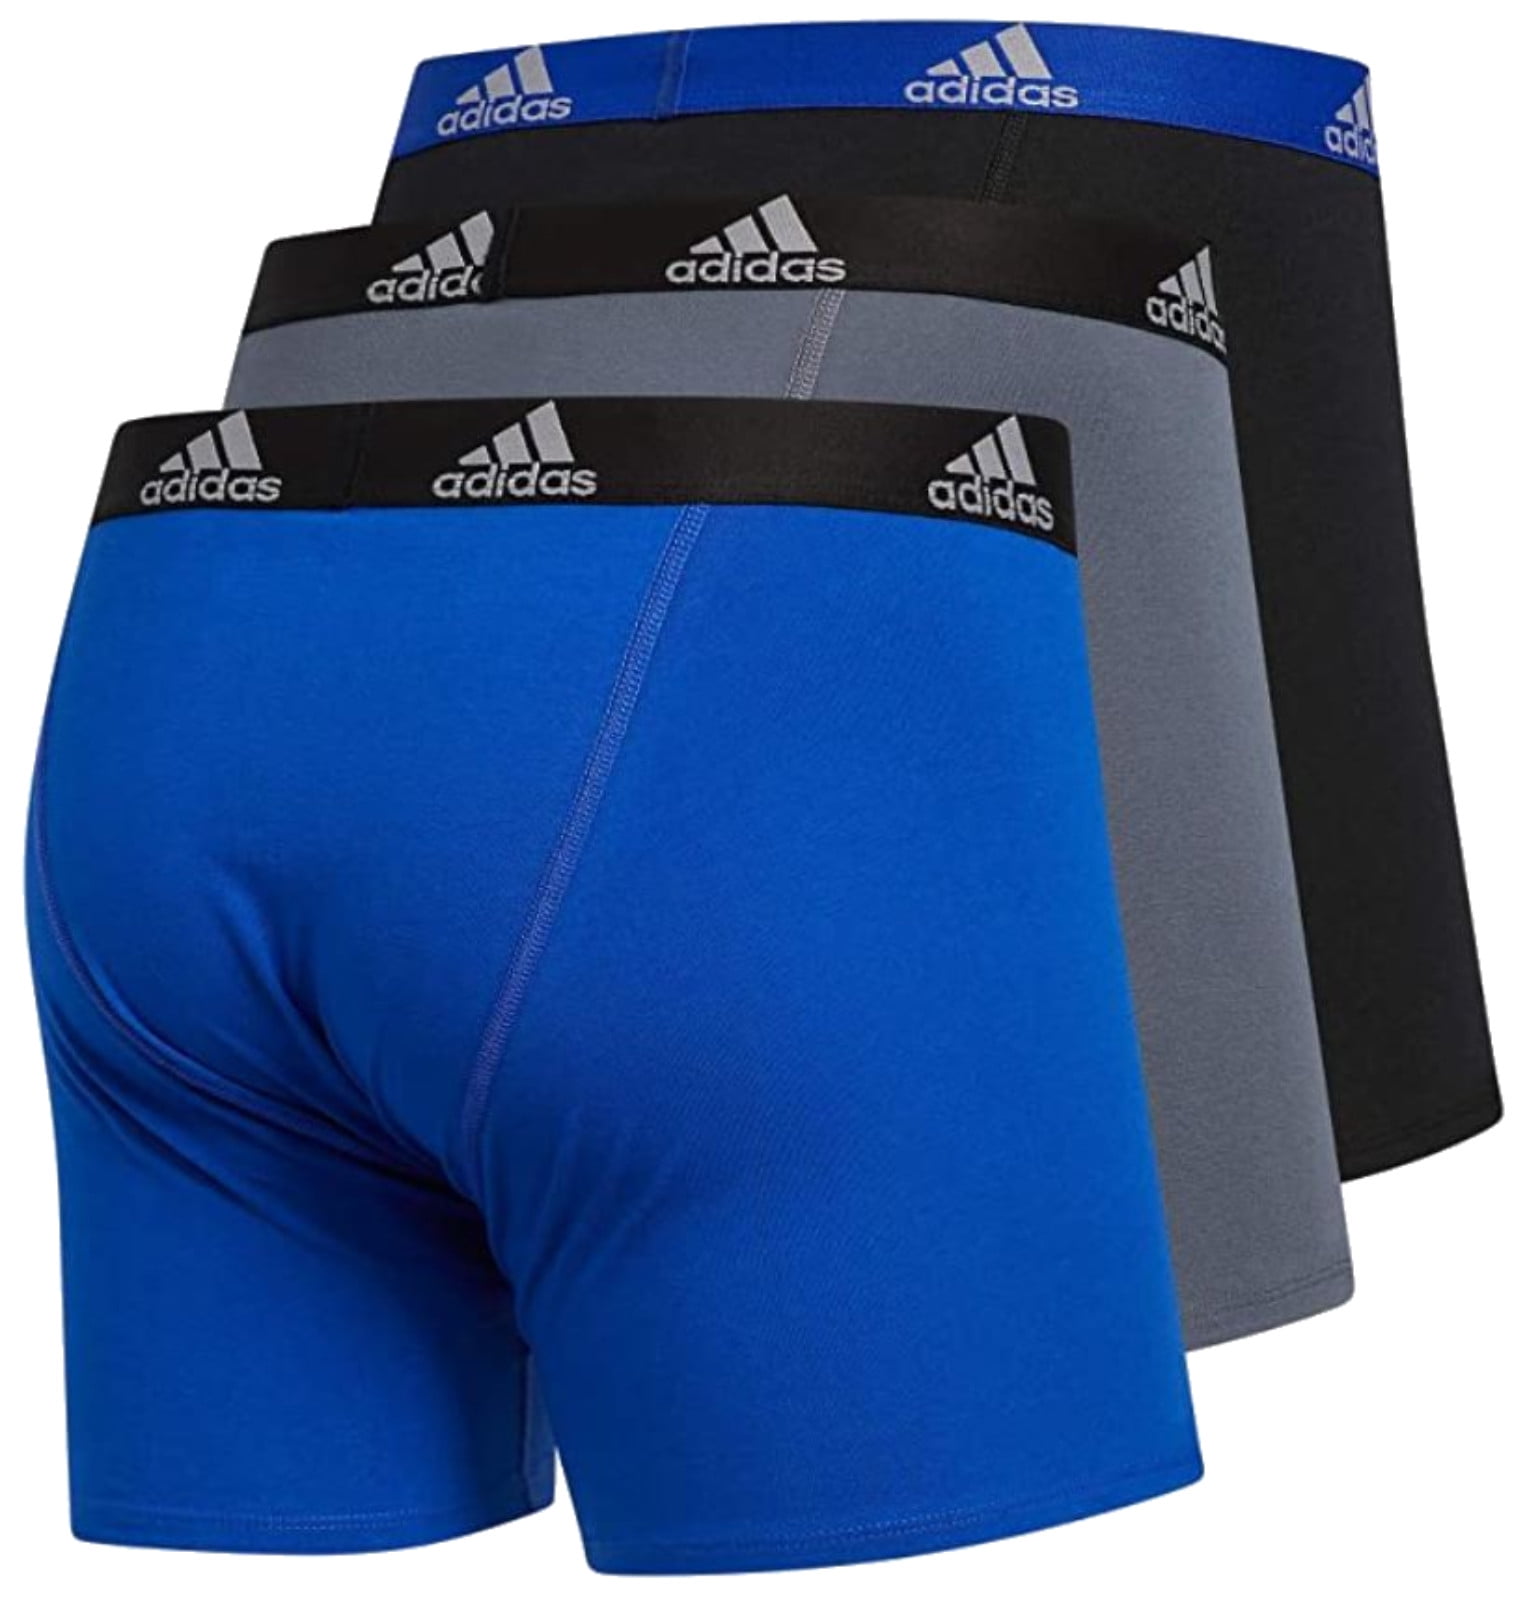 Men adidas 4-Pack Boxer Briefs Performance Cotton Stretch Underwear (All  Black)